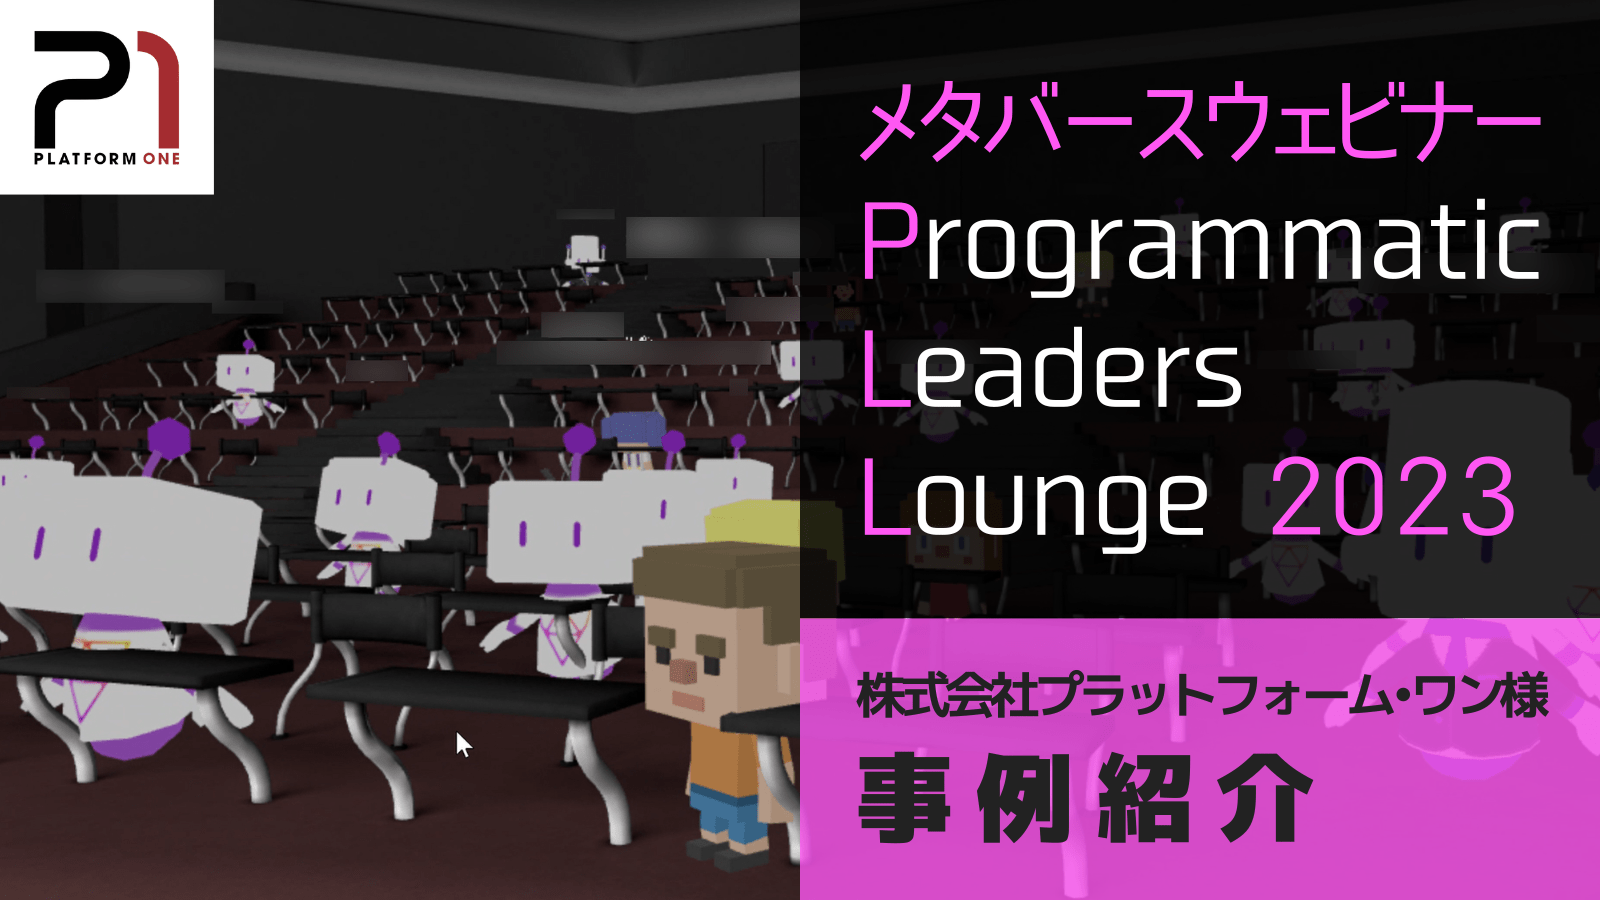 メタバースウェビナー Programmatic Leaders Lounge 2023